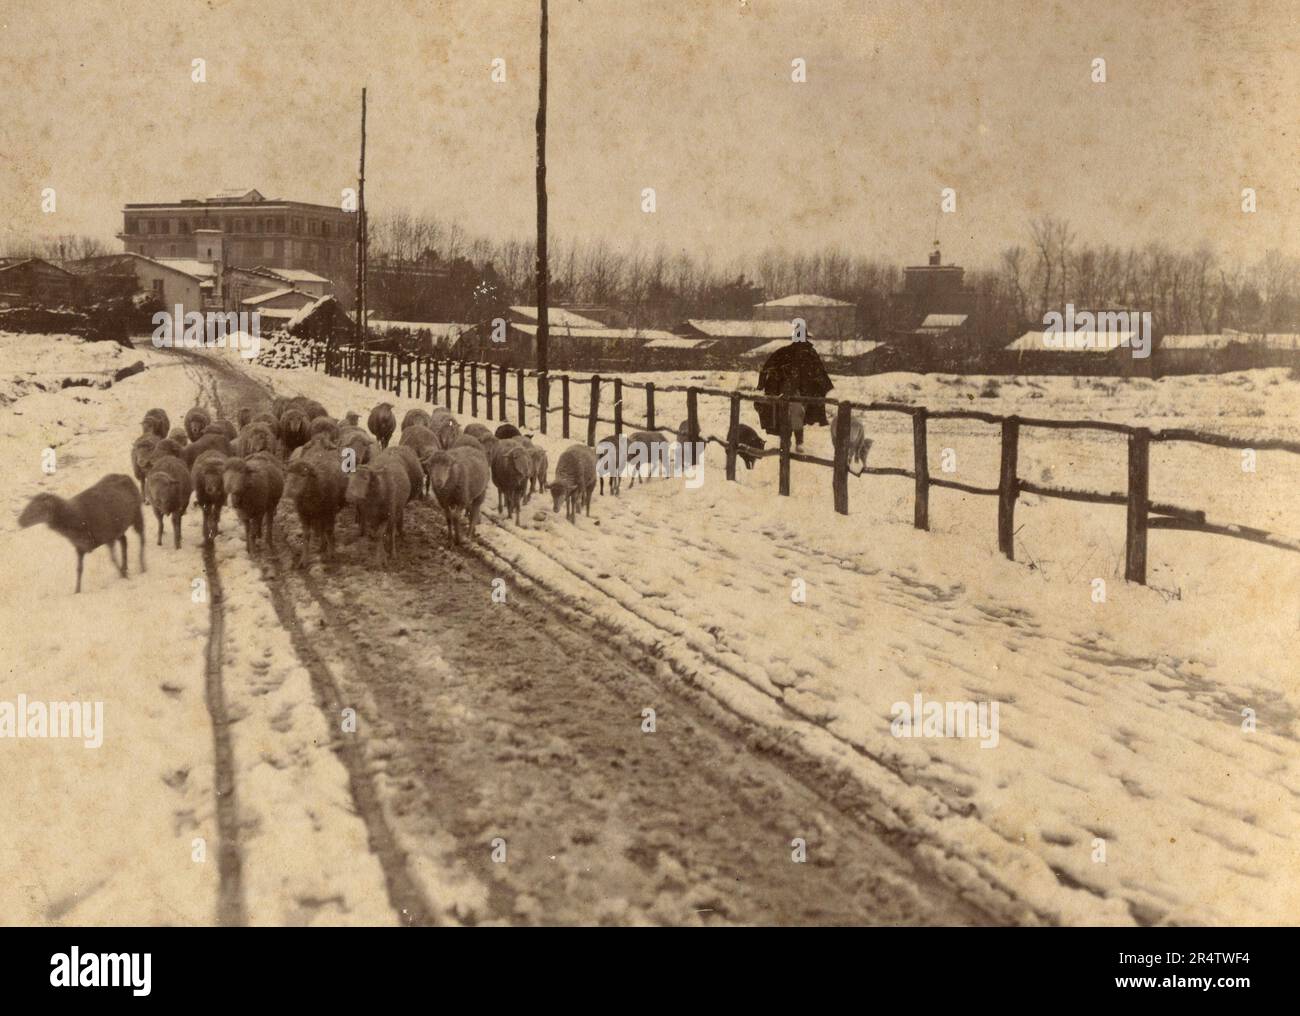 Pastore con il gregge di pecore nel campo con la neve, Italia 1890s Foto Stock